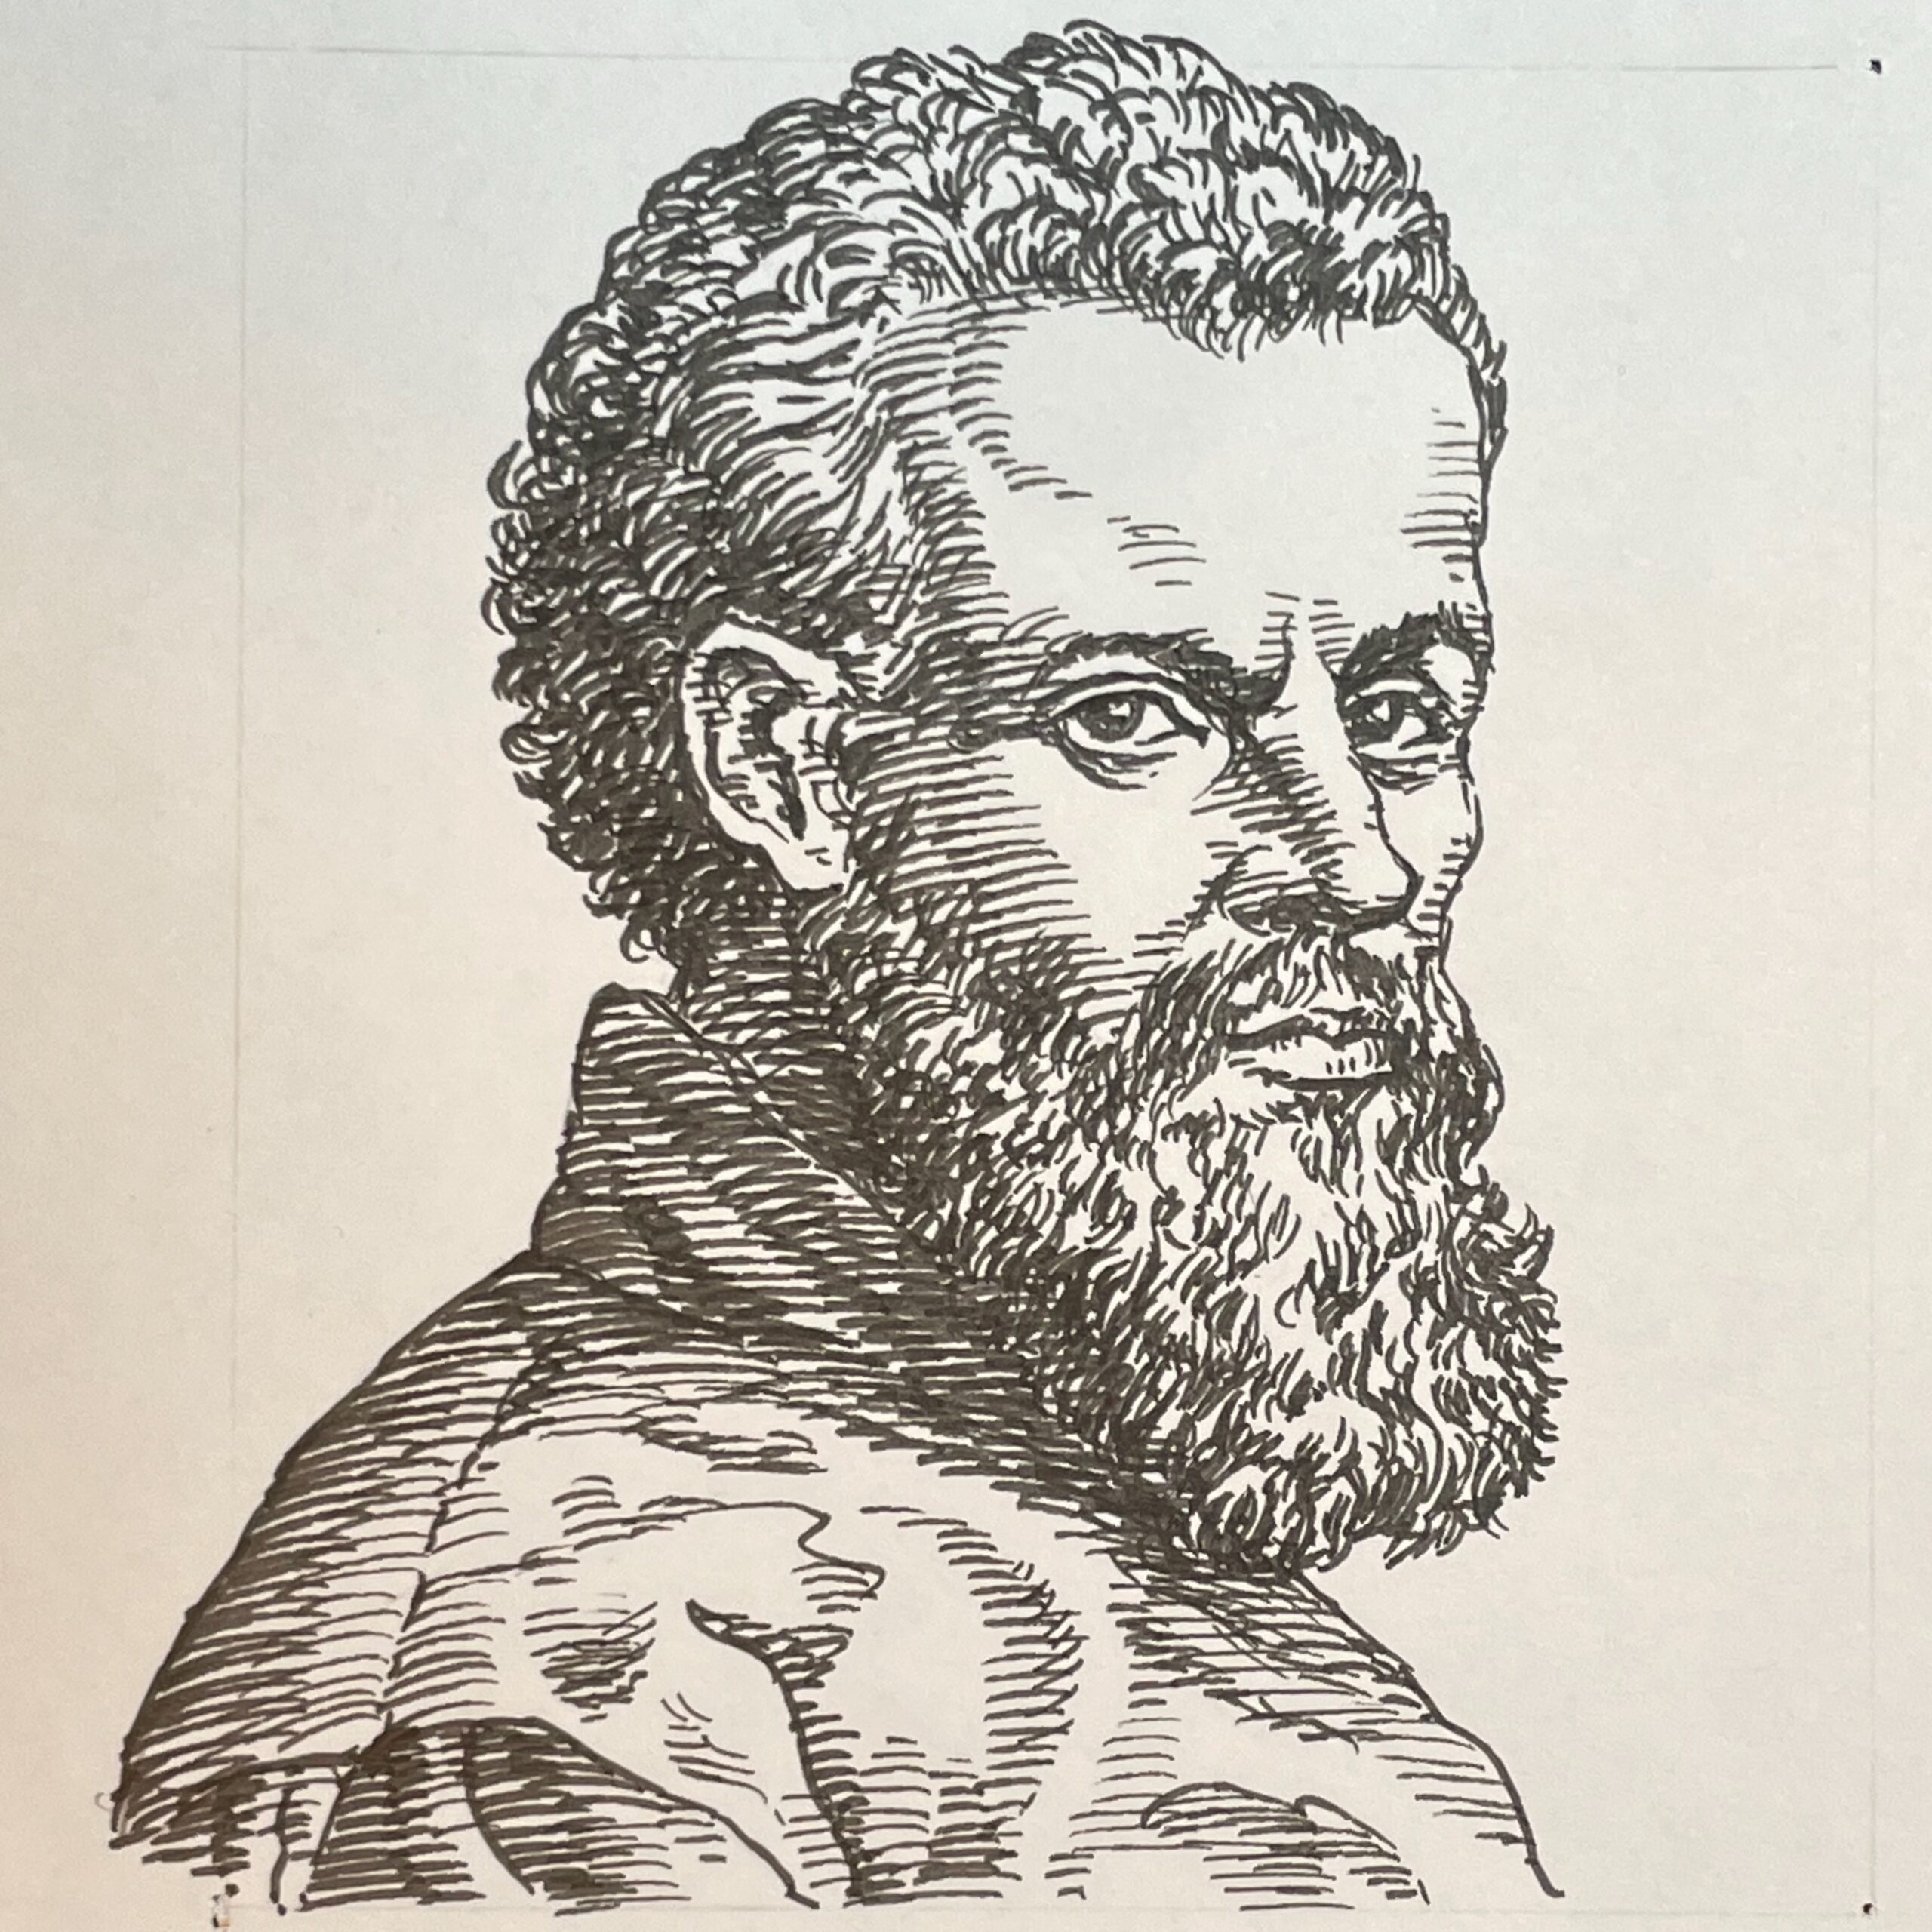 1514-1564を生きた医学者。2世紀ガレノスによって興った解剖を、De Humani Corporis Fabrica Libri Septem(1543年)によって解剖を学問レベルに引き上げた。その詳細な解剖図はガレノスの学説からの転換期となる。その後カール5世の侍医などの要職をつとめた。その解剖学の先鋭眼は当時の医学界に大きな衝撃を与え、風当たりも強かったとされる。